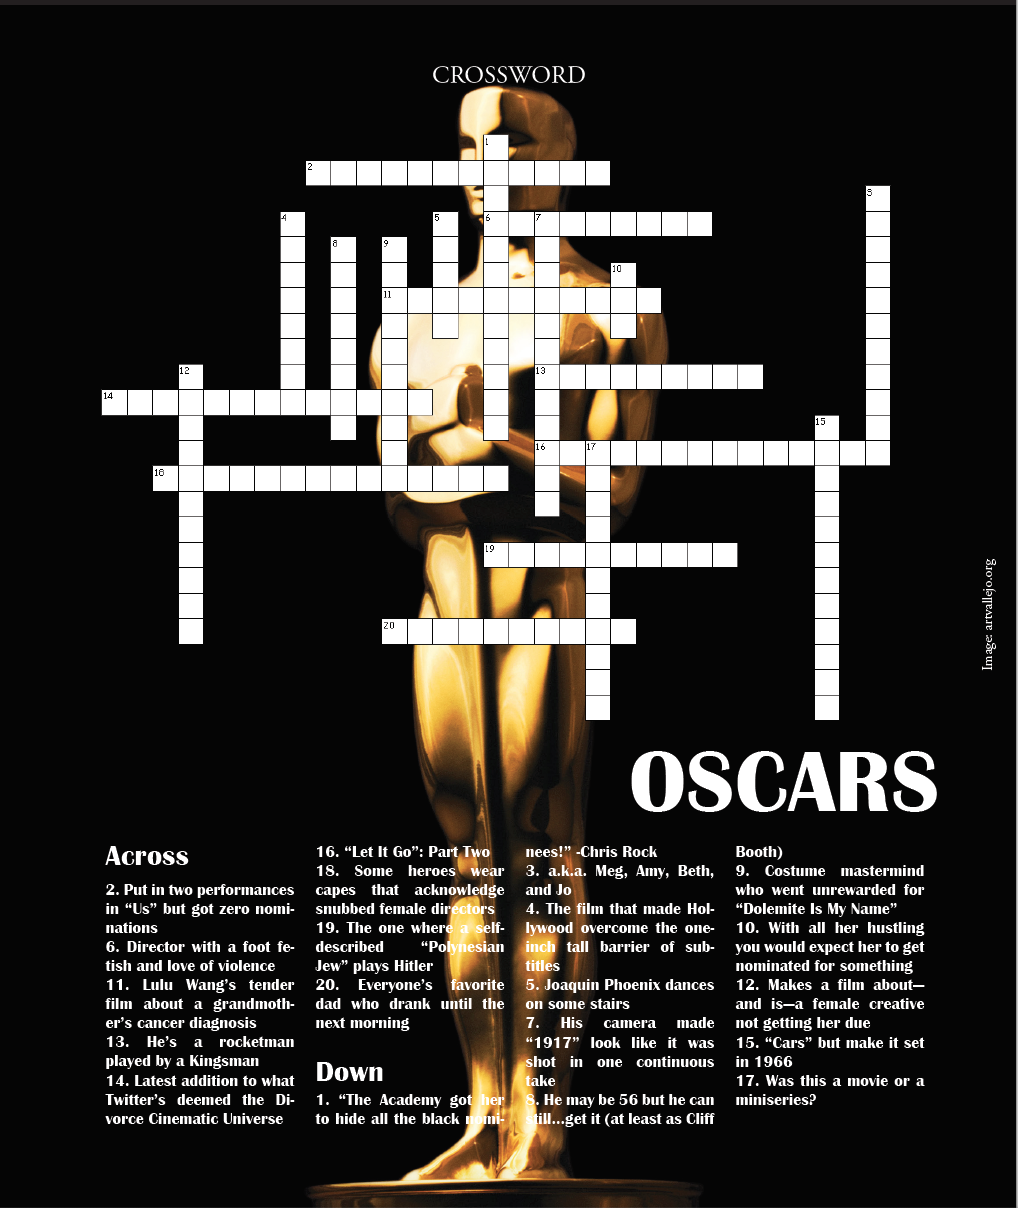 February 2020: The Oscars